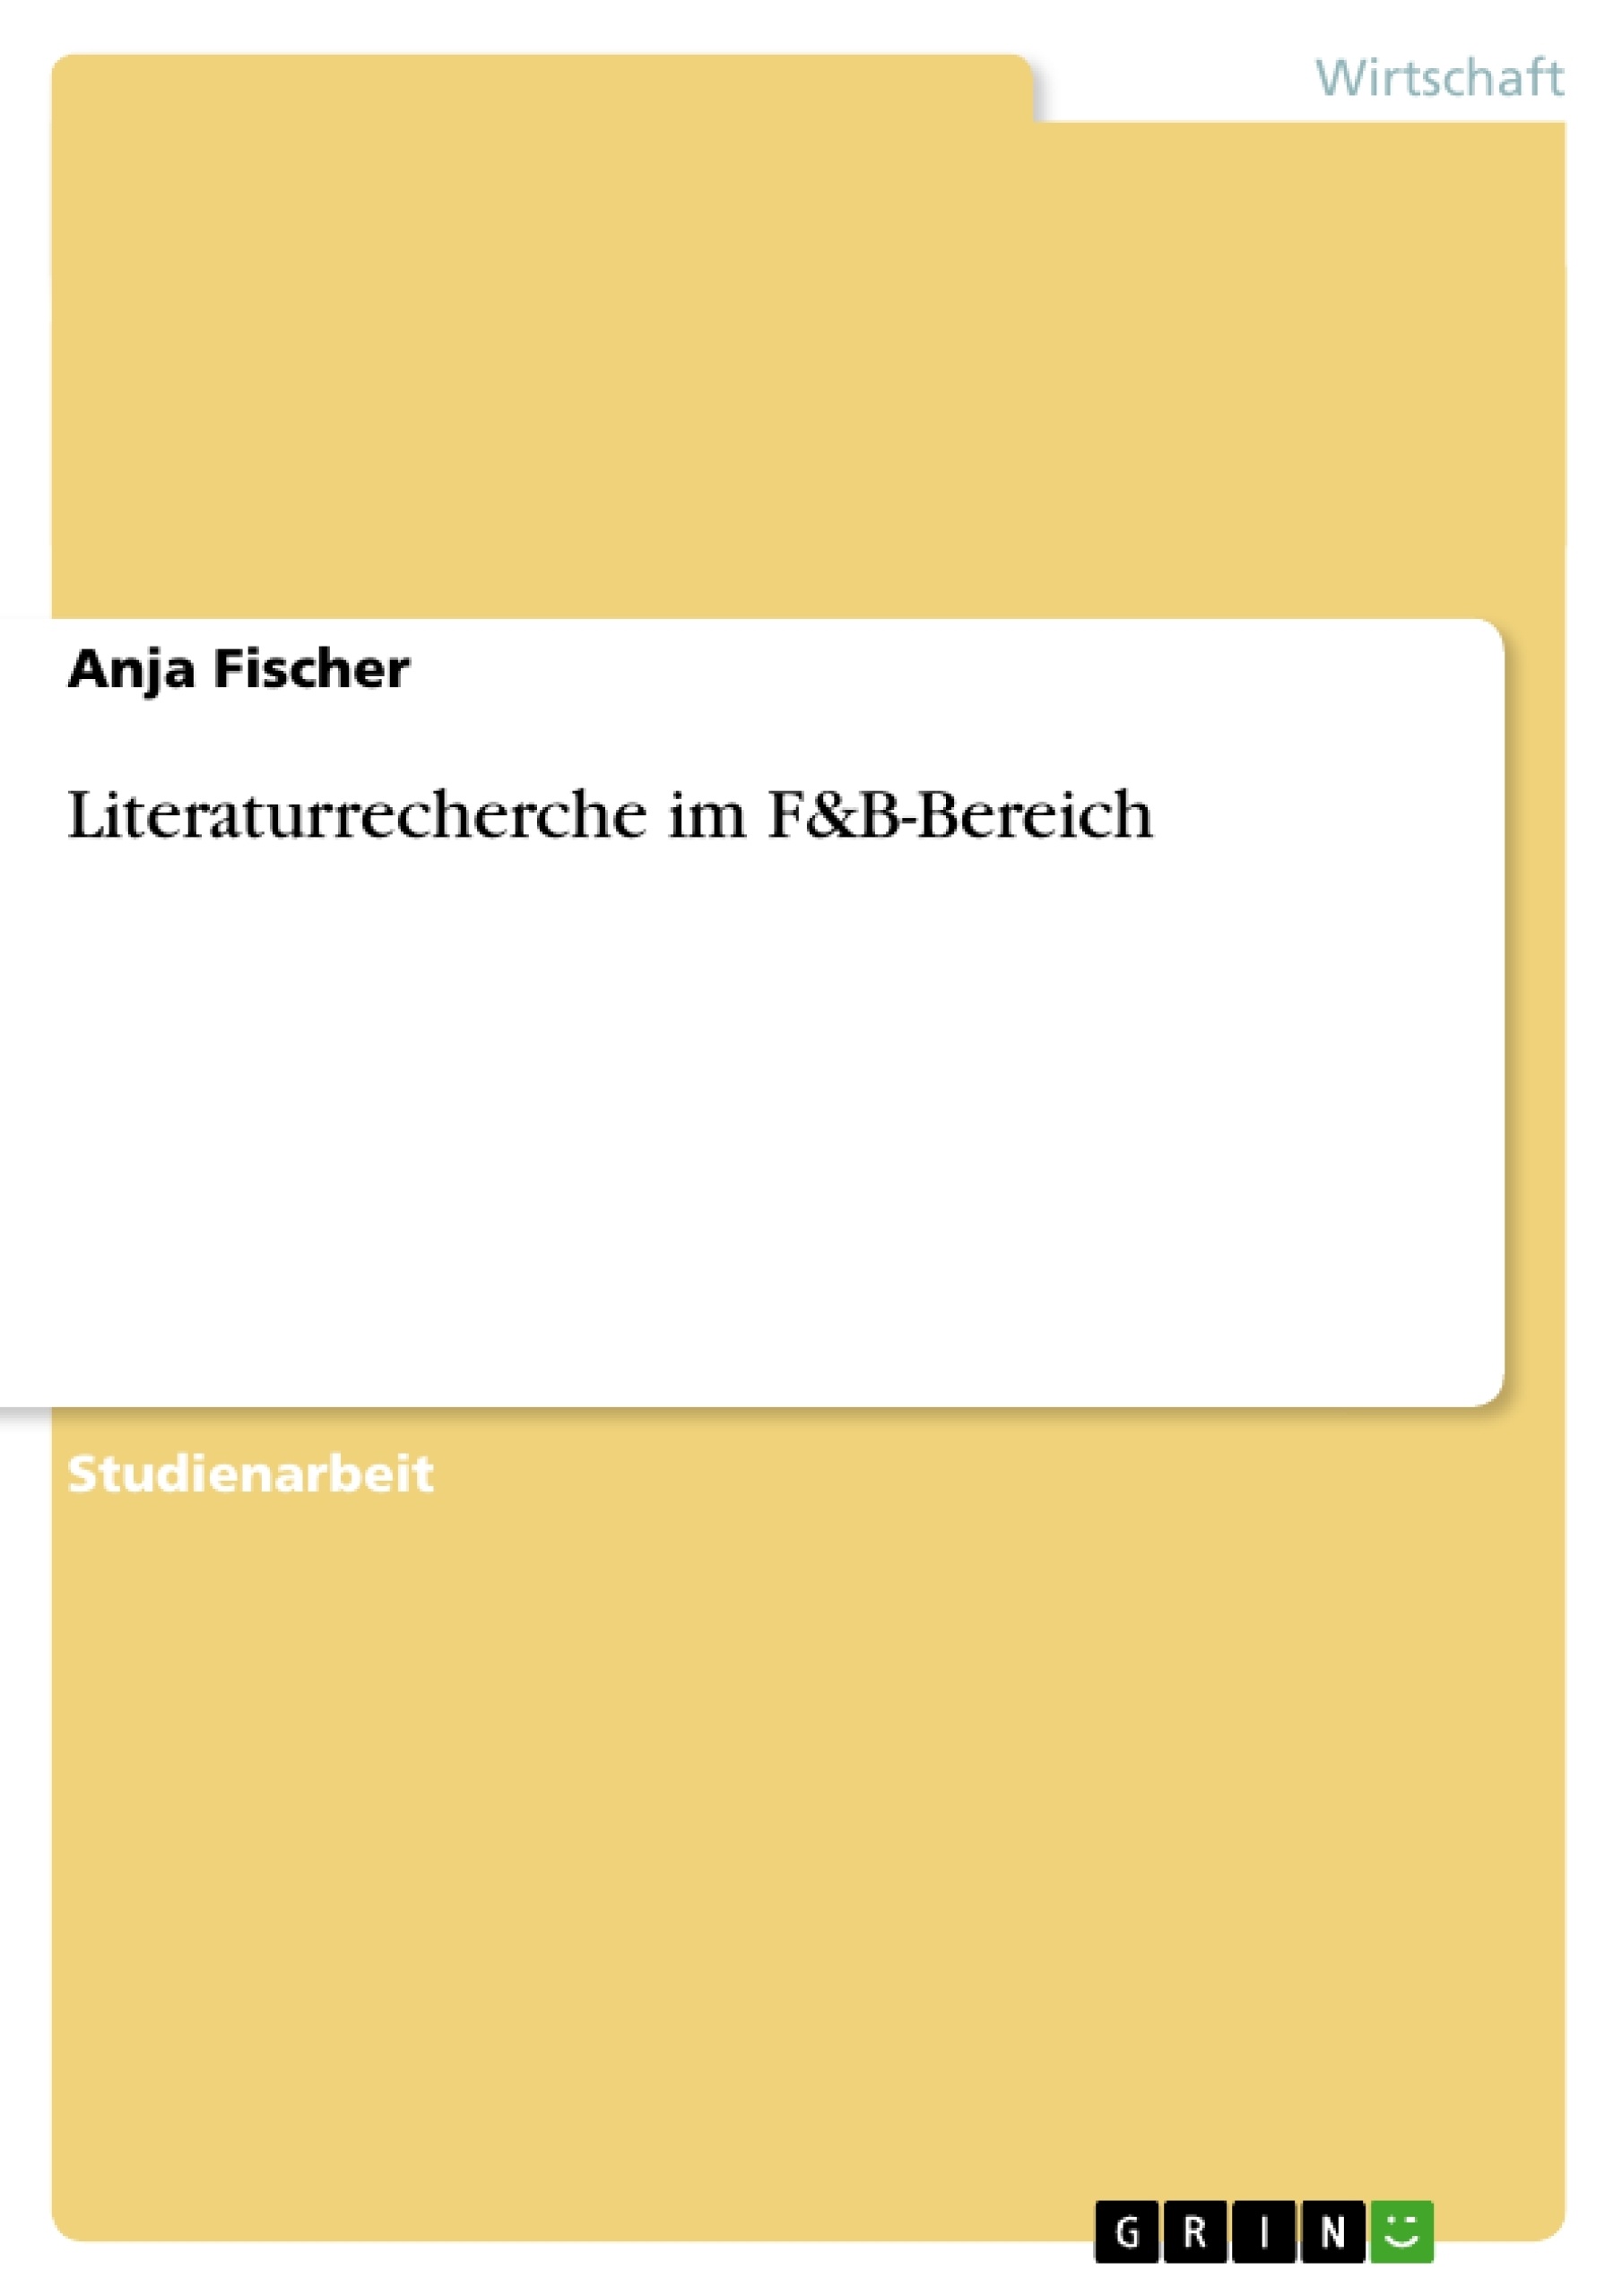 Título: Literaturrecherche im F&B-Bereich